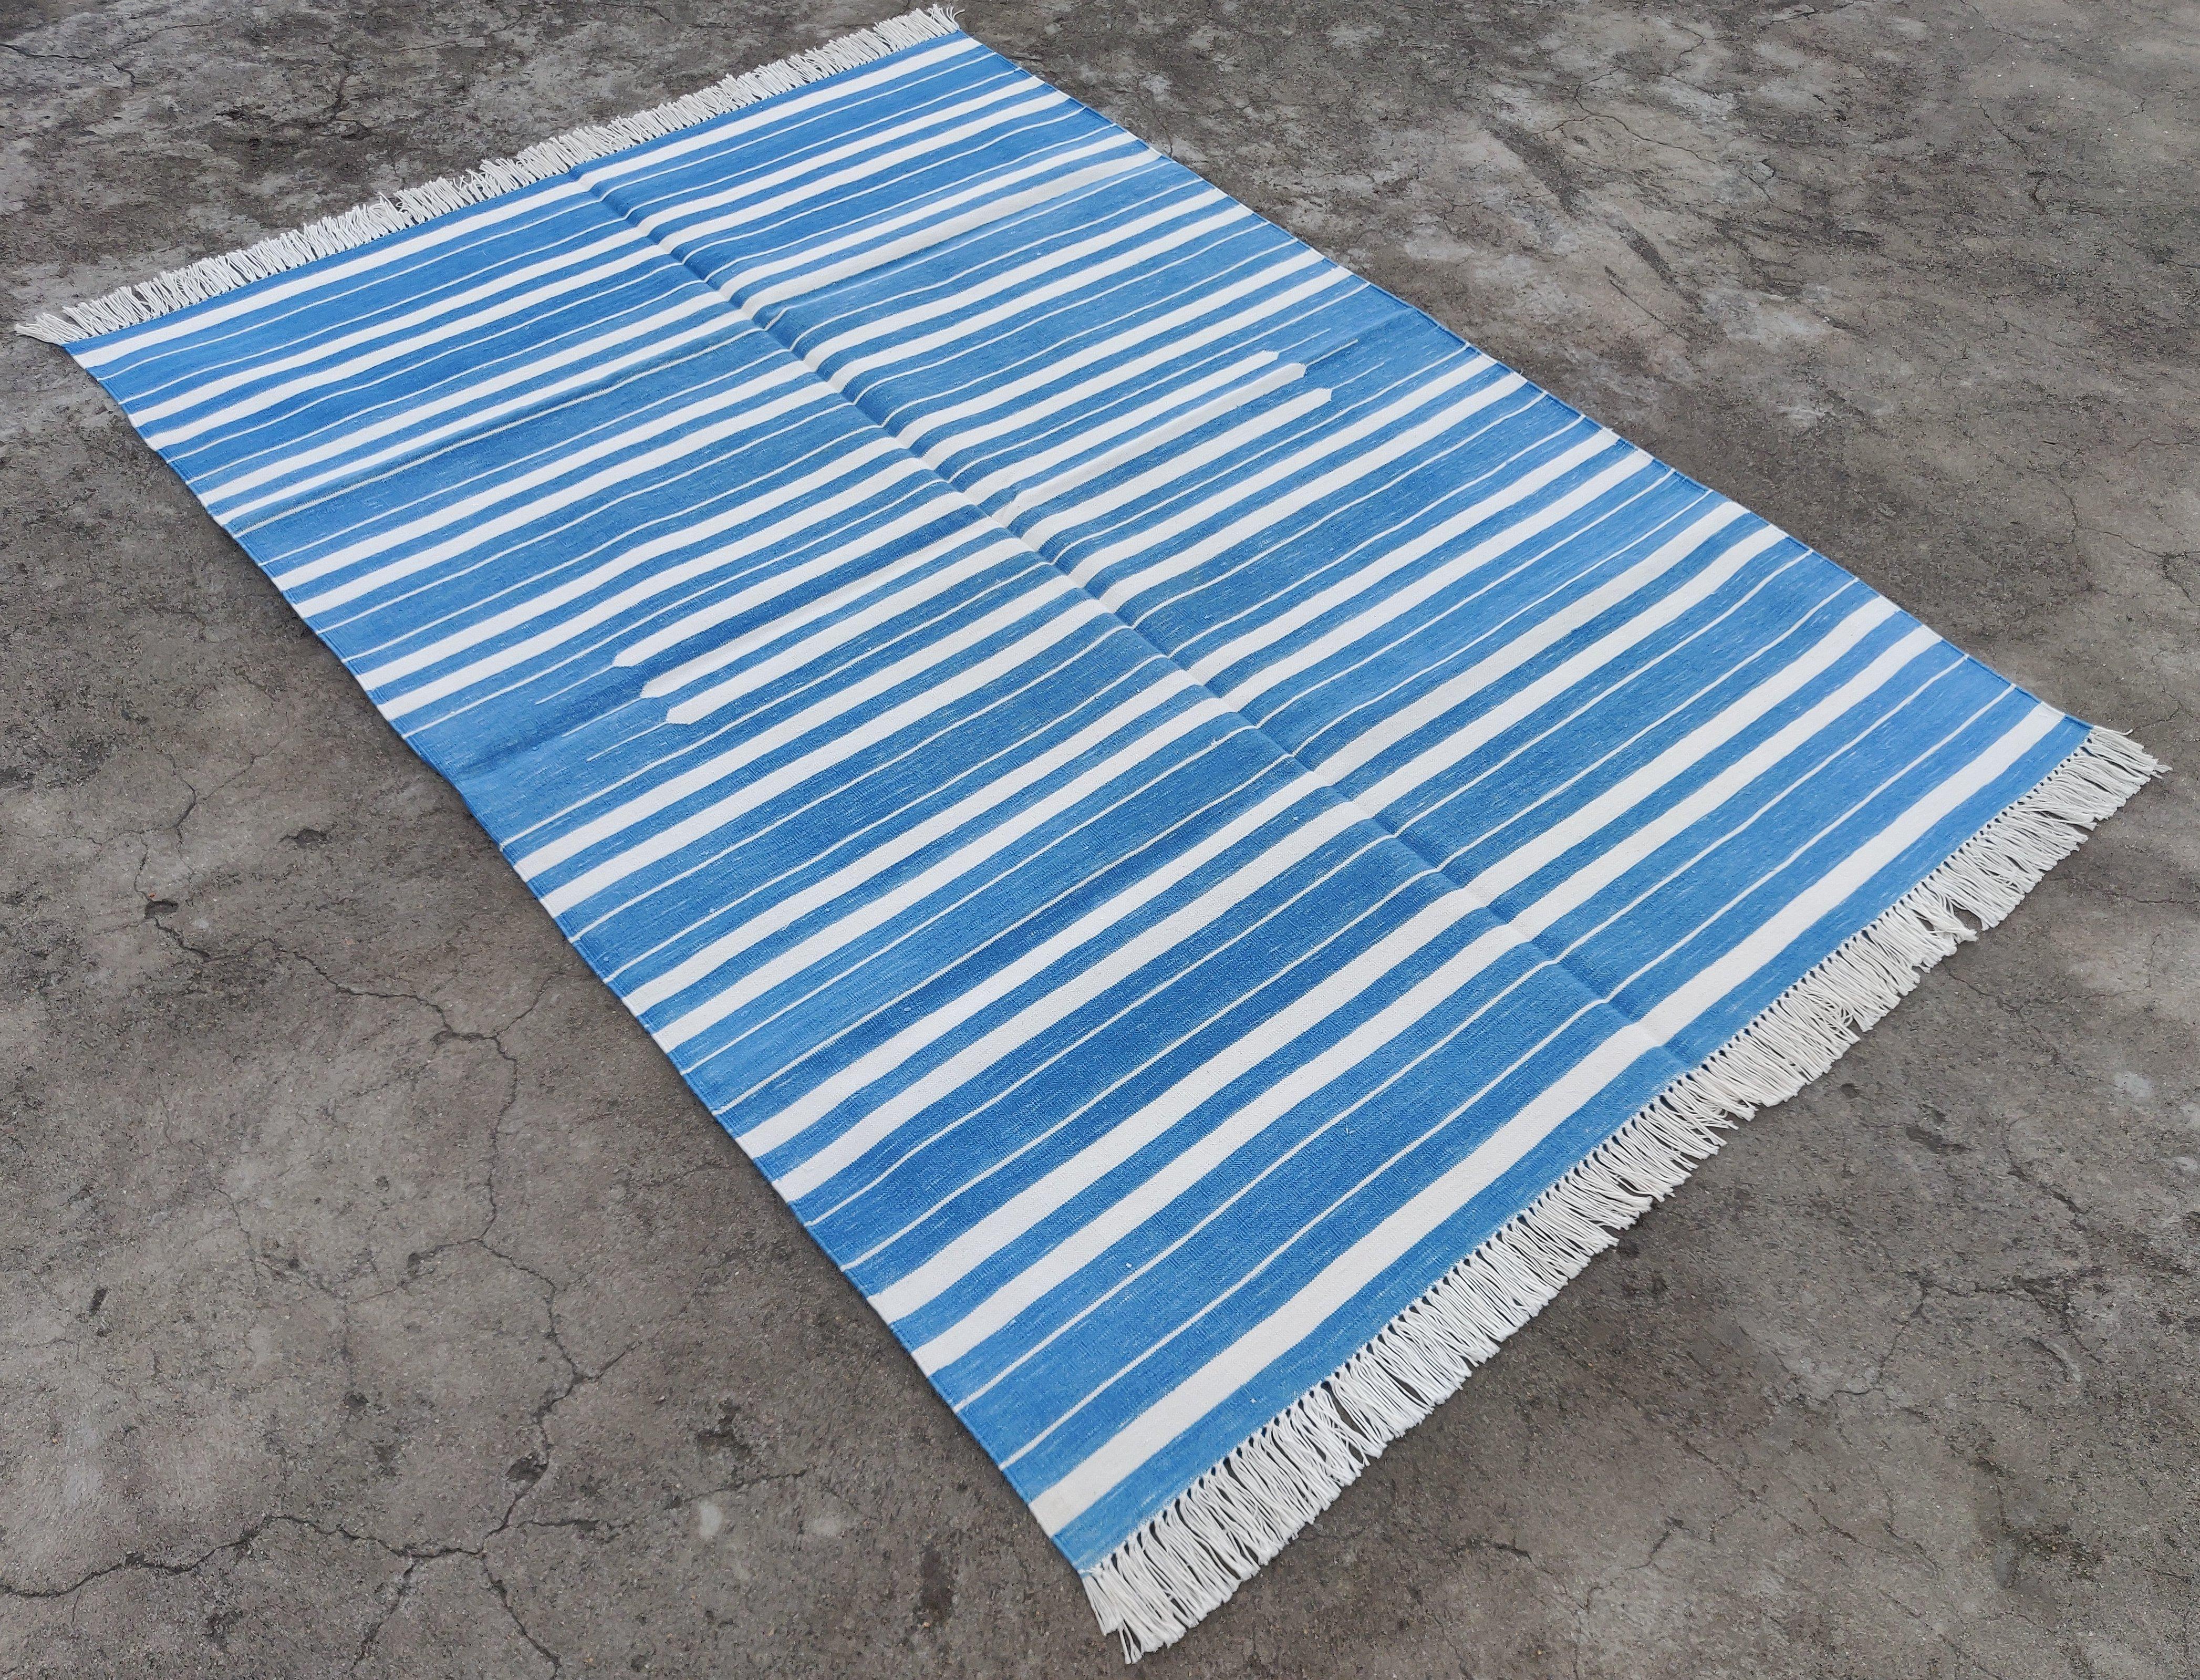 Vegetabil gefärbte Baumwolle Himmelblau und Weiß gestreift Indischer Dhurrie Teppich-4'x6' 

Diese speziellen flachgewebten Dhurries werden aus 15-fachem Garn aus 100% Baumwolle handgewebt. Aufgrund der speziellen Fertigungstechniken, die zur